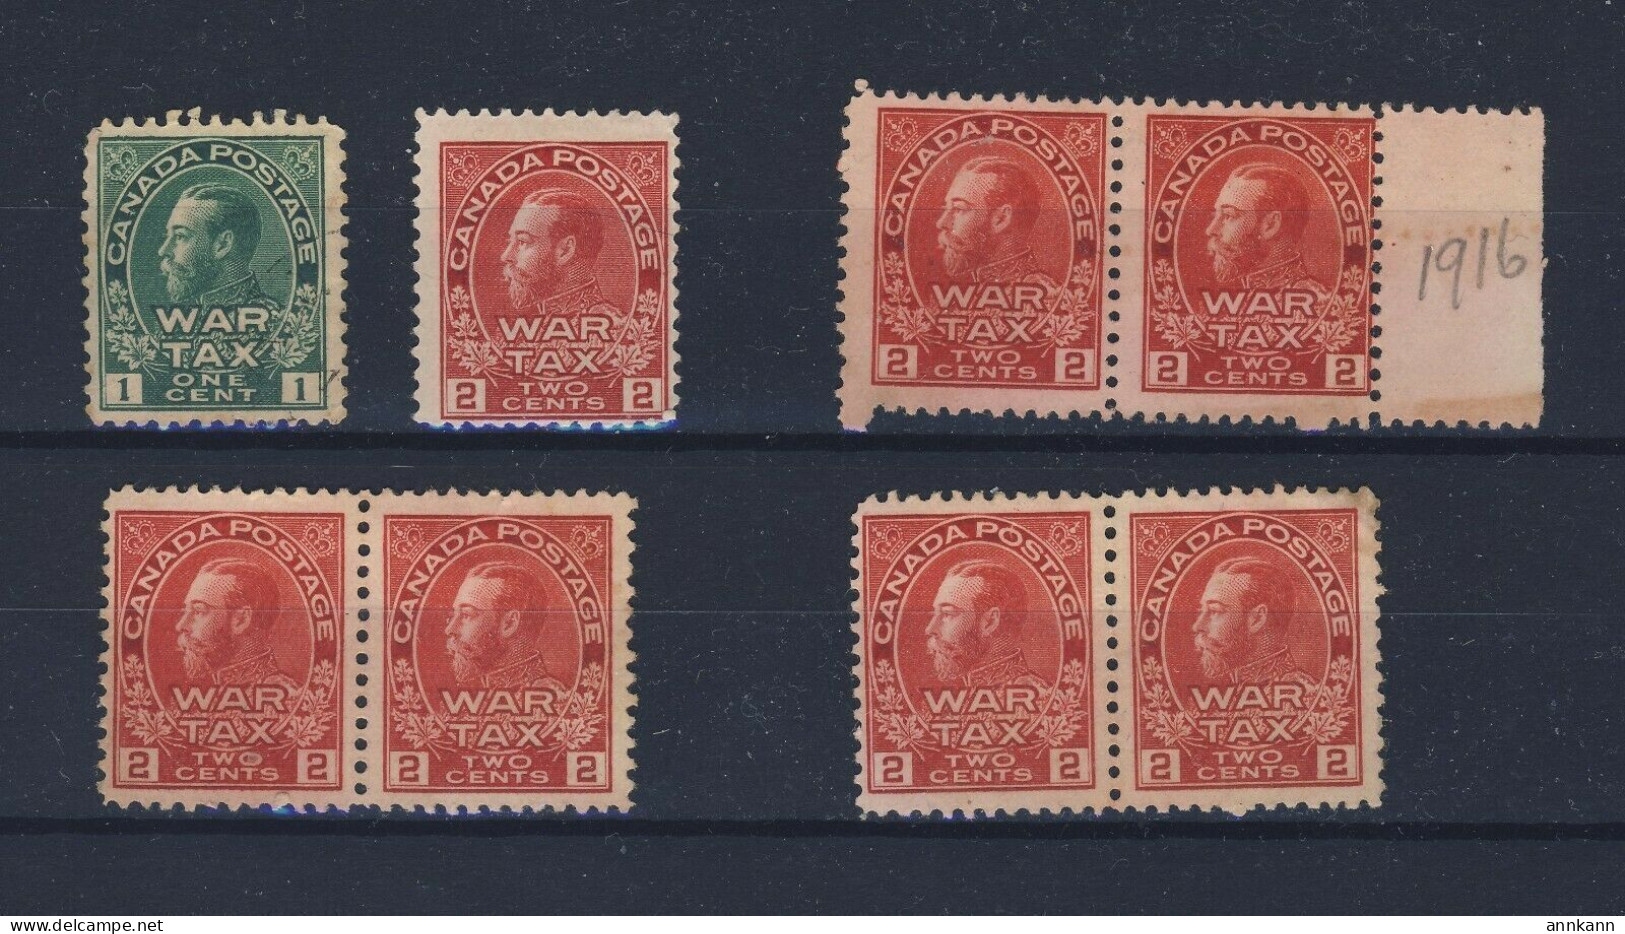 8x Canada Mint Admiral War Tax Stamps MR1-1c MR2-2c 3x Pairs MR2-2c GV= $100.00 - Oorlogsbelastingen